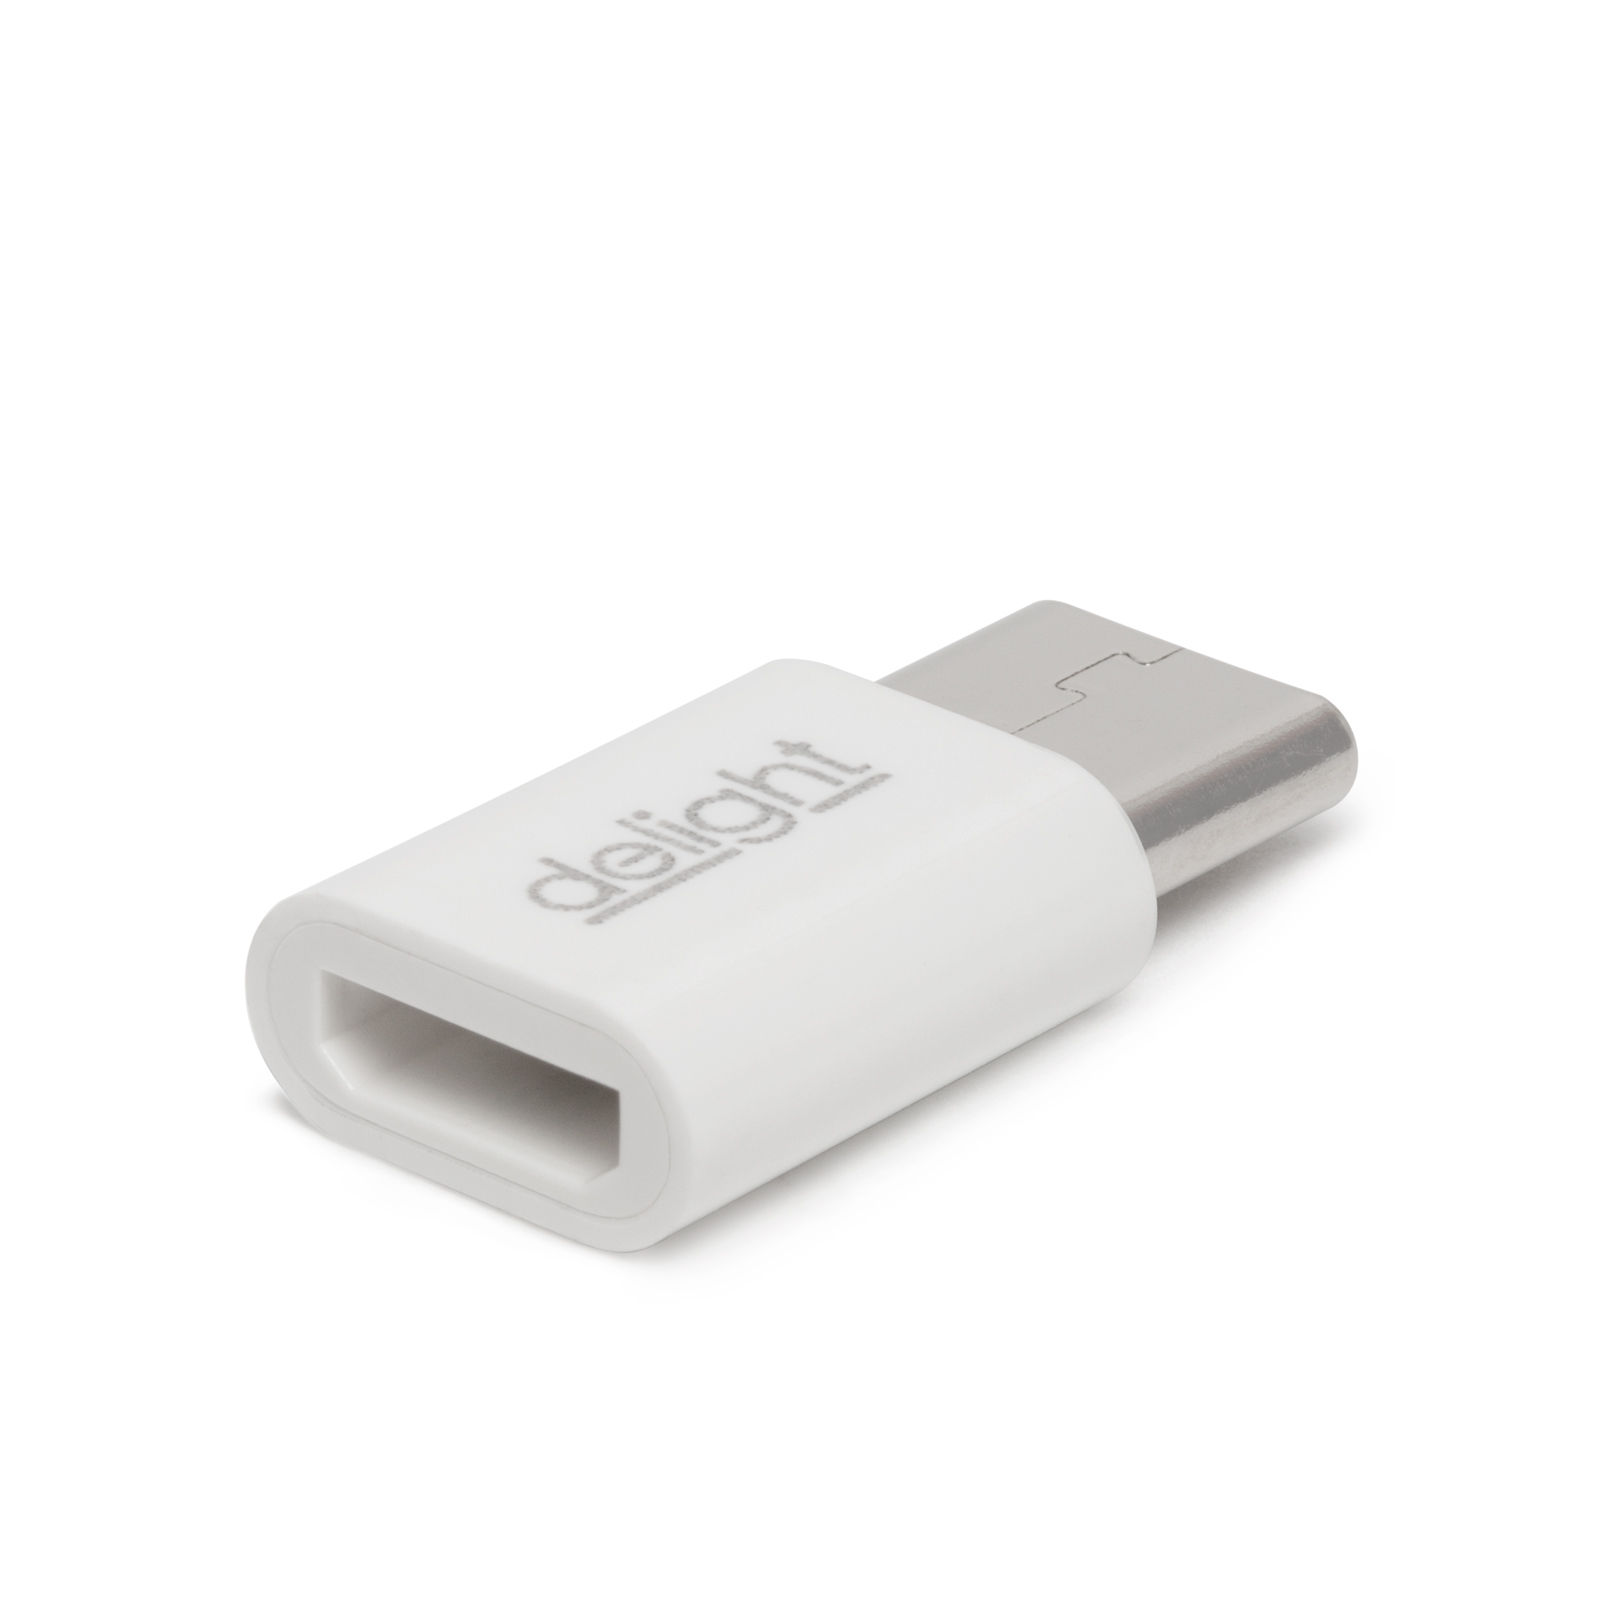 Adaptor - Type-C - Micro USB Lightning thumb